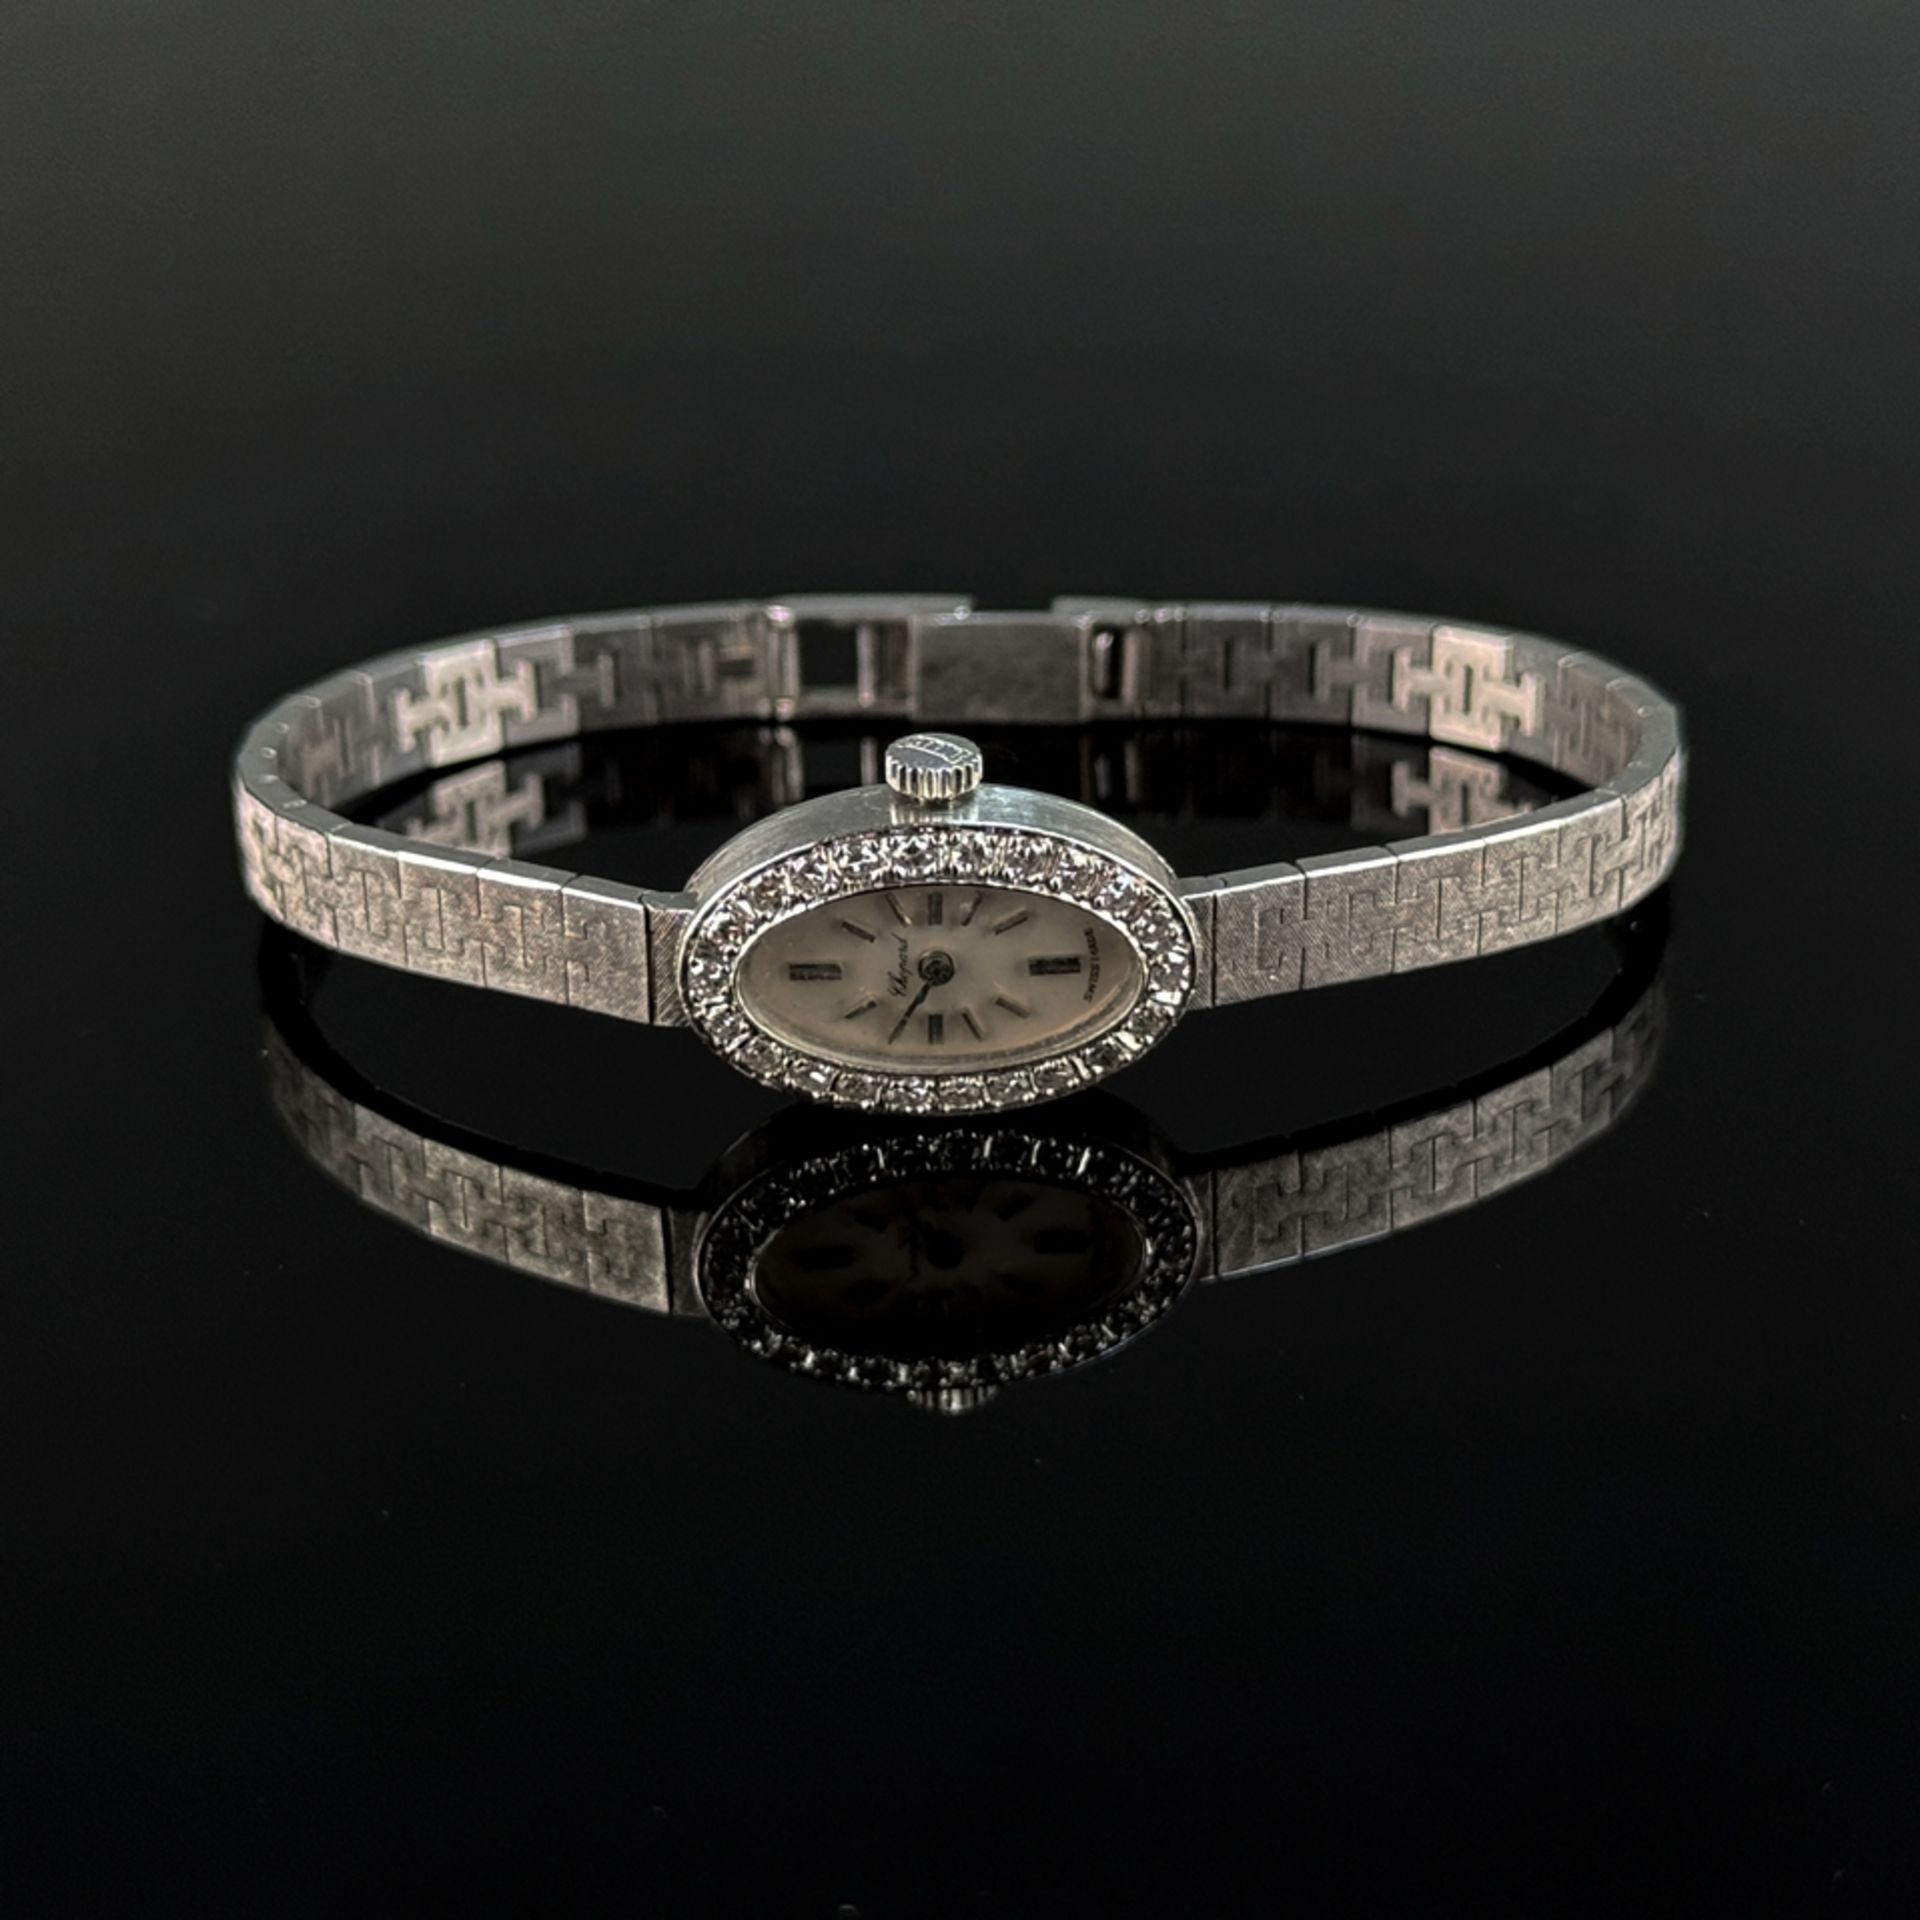 Elegant ladies' wristwatch, Chopard, 750/18K white gold (hallmarked), 25.78g, in original box, oval